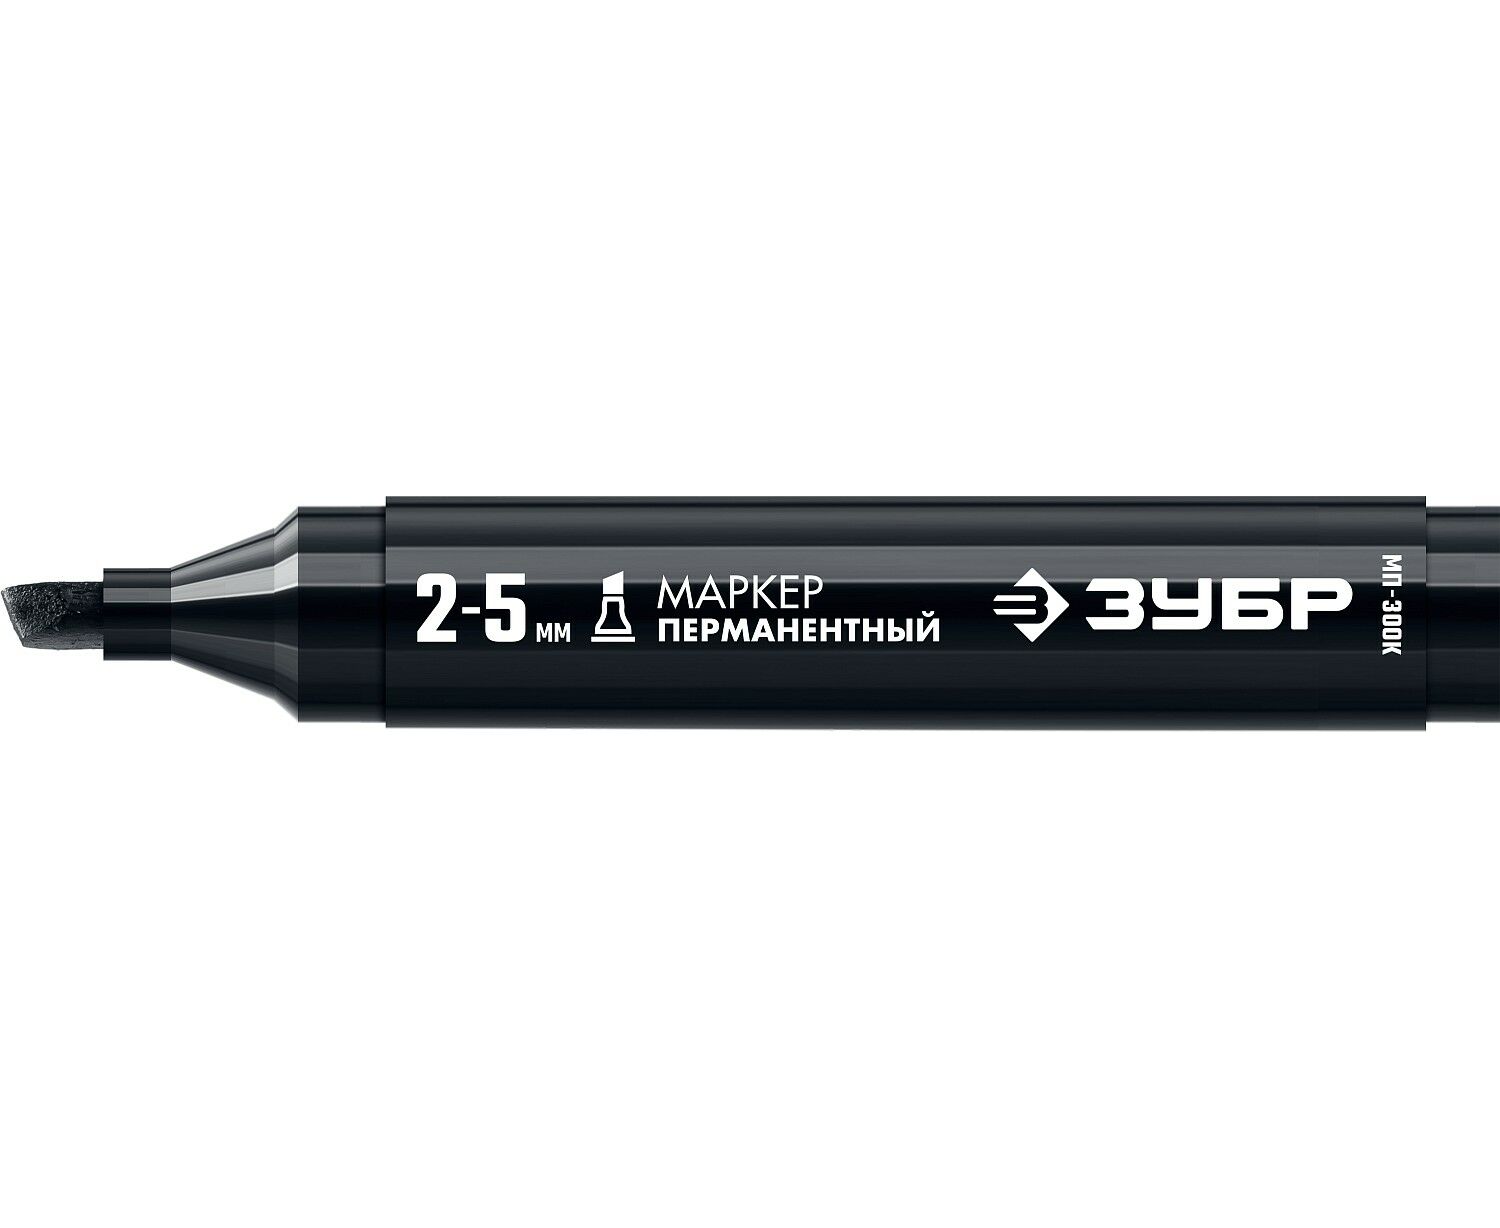 Маркер строительный ЗУБР МП-300К черный, 2-5 мм, клиновидный, перманентный перманентный маркер зубр